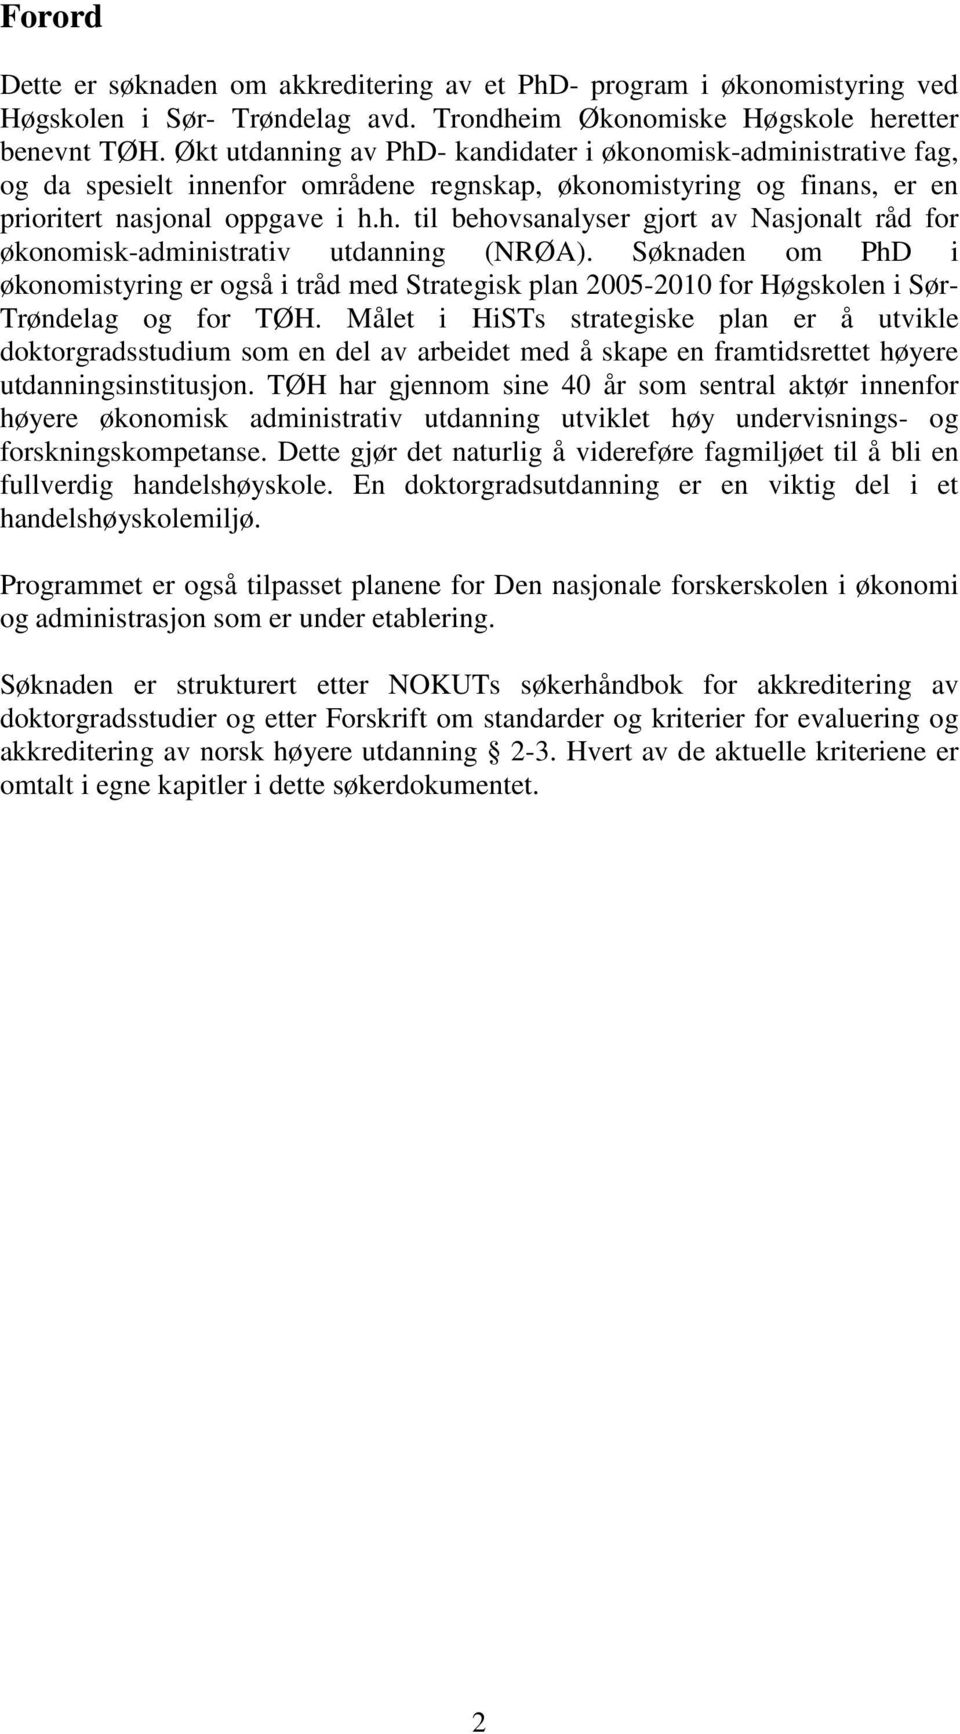 Søknaden om PhD i økonomistyring er også i tråd med Strategisk plan 2005-2010 for Høgskolen i Sør- Trøndelag og for TØH.